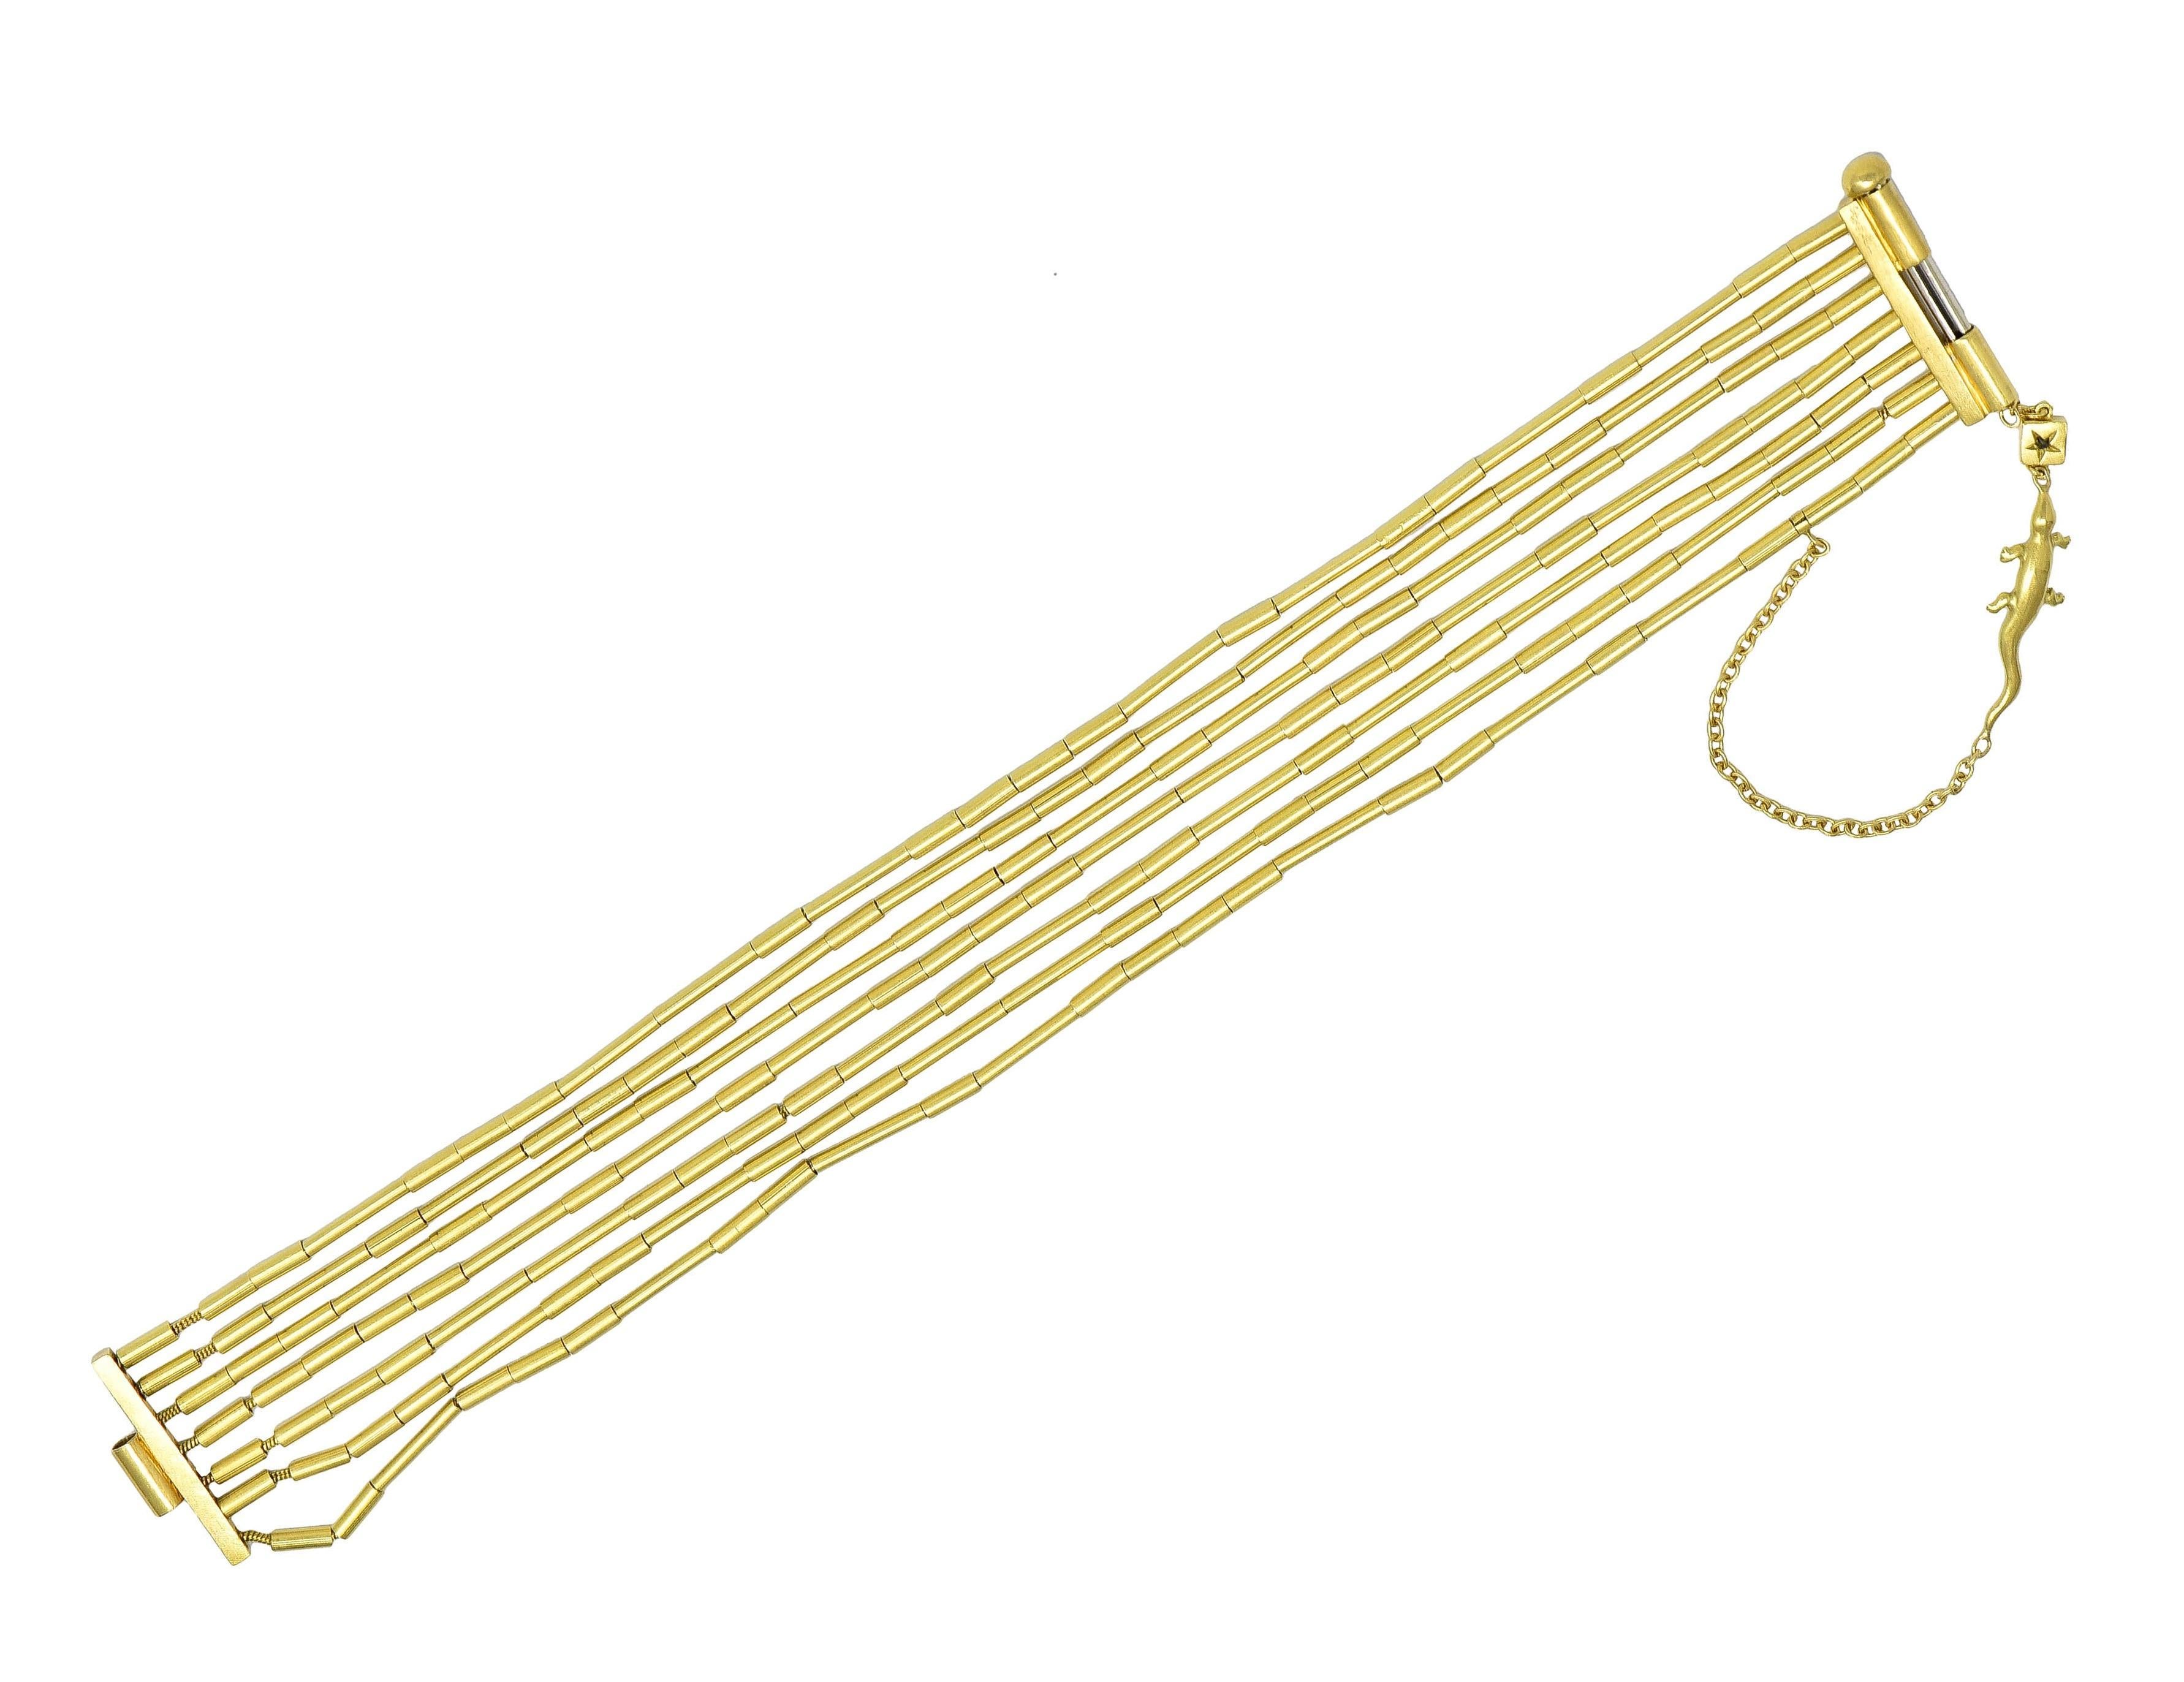 Bestehend aus sieben Strängen goldener Röhrenperlen auf einer goldenen Kette
Hängekette mit goldenem Eidechsen-Charme und Diamant
Prinzessinnenschliff und ein Gewicht von etwa 0,08 Karat
Augenrein und hell - mit Lünette 
Mit Schiebeverschluss